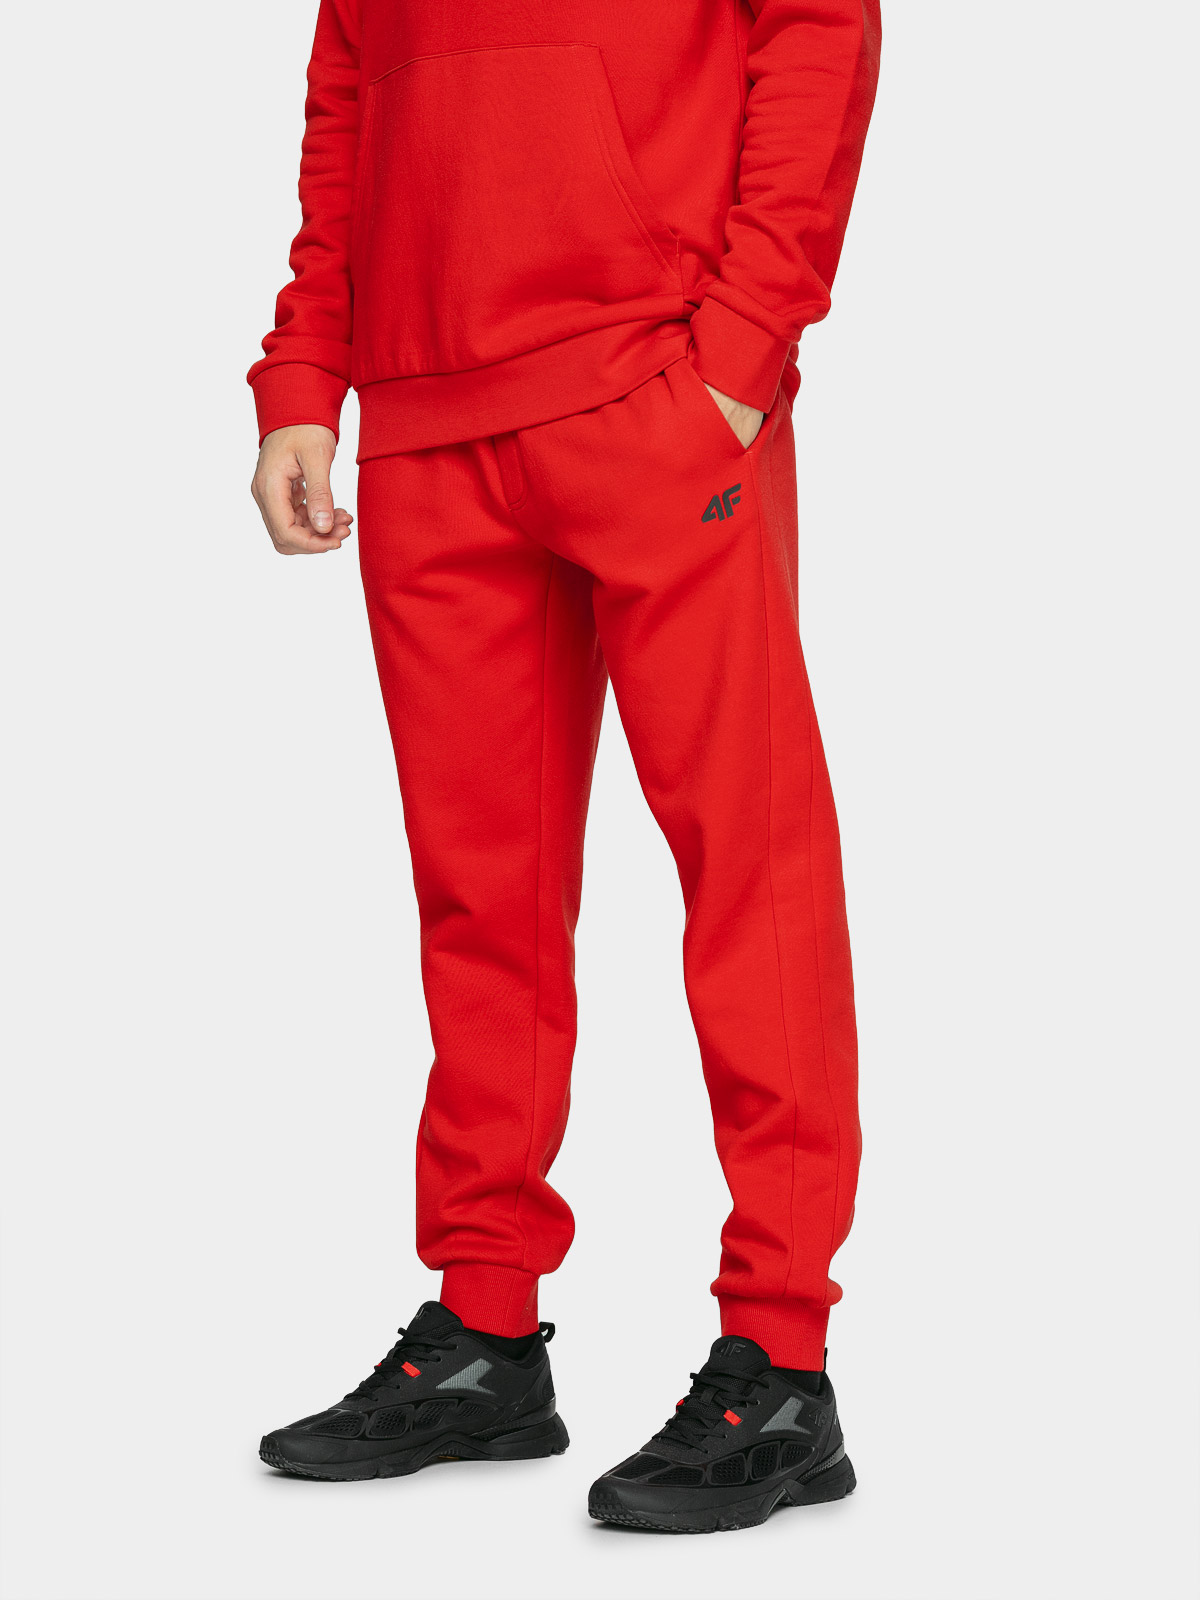 фото Спортивные брюки мужские 4f nosh4-spmd351 красные s